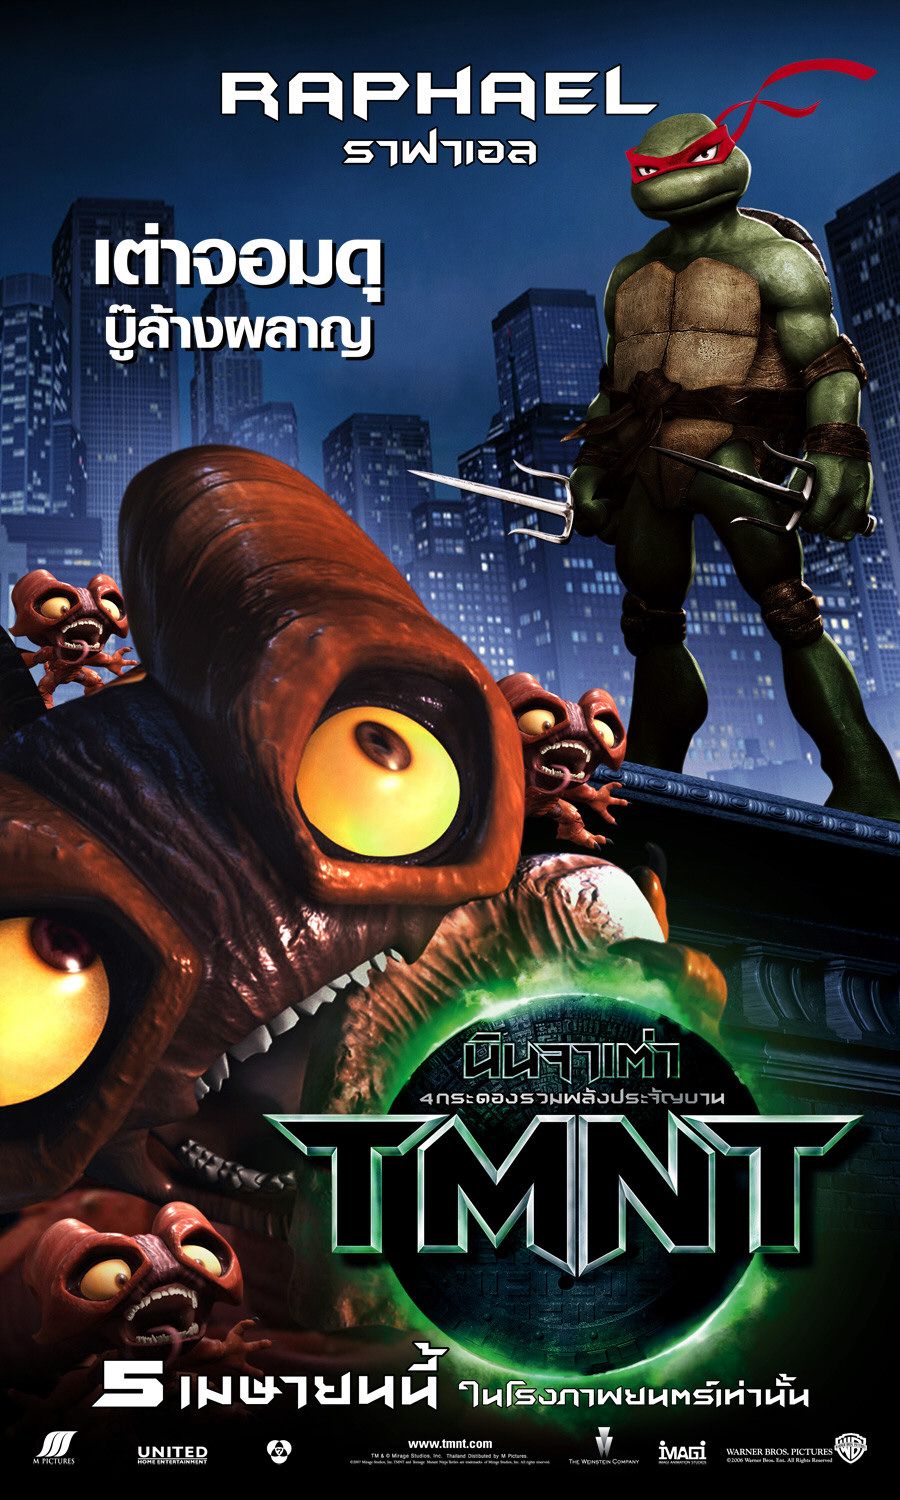 Extra Large Movie Poster Image for Teenage Mutant Ninja Turtles (#12 of 16)